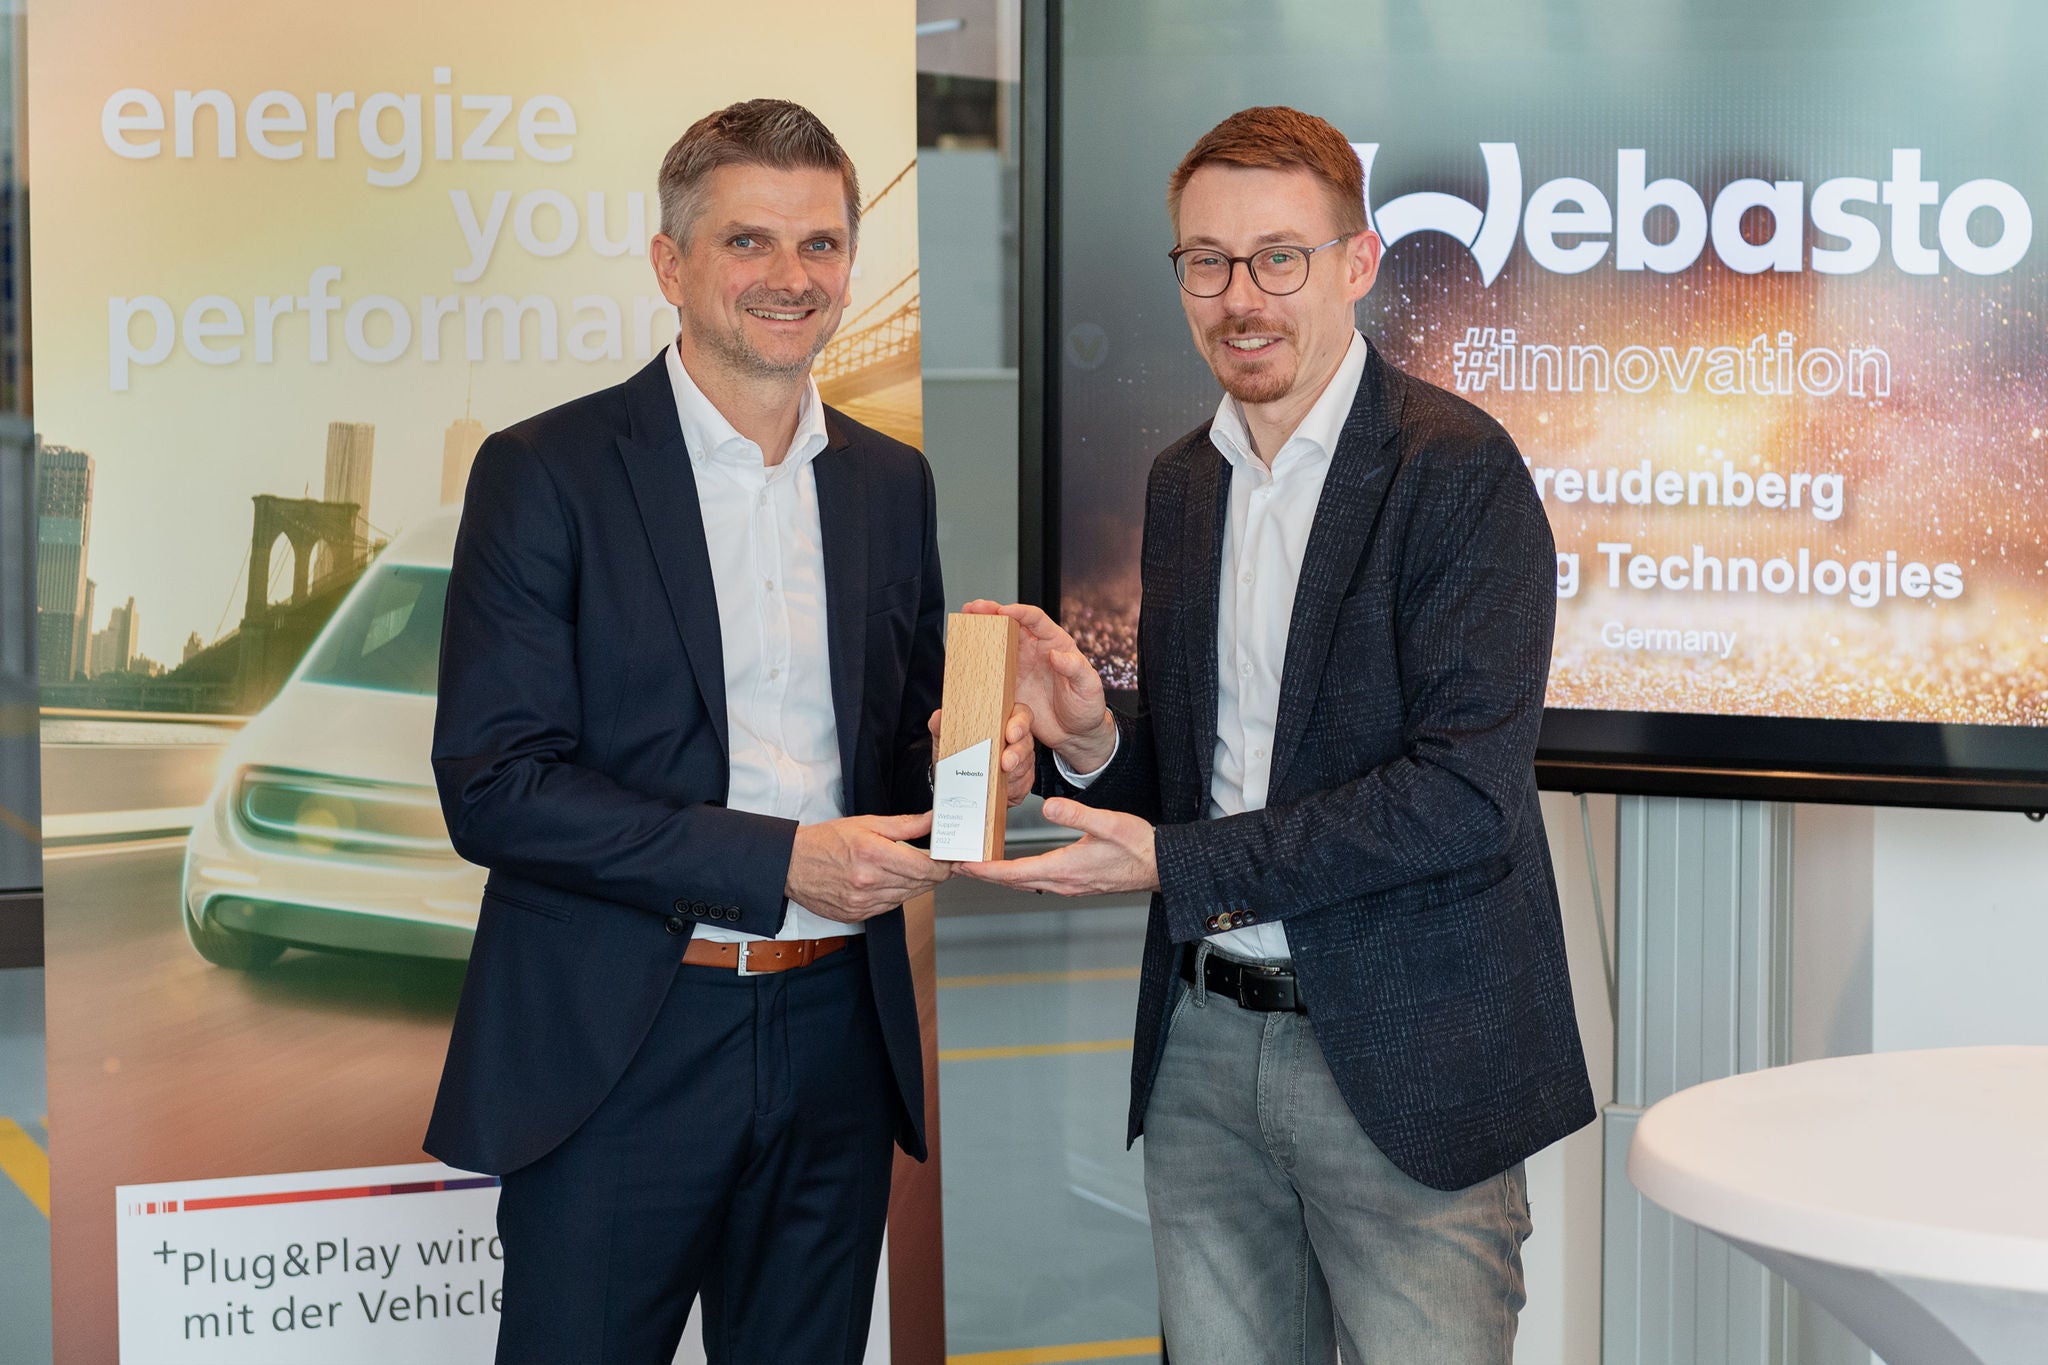 First Webasto Supplier Innovation Award